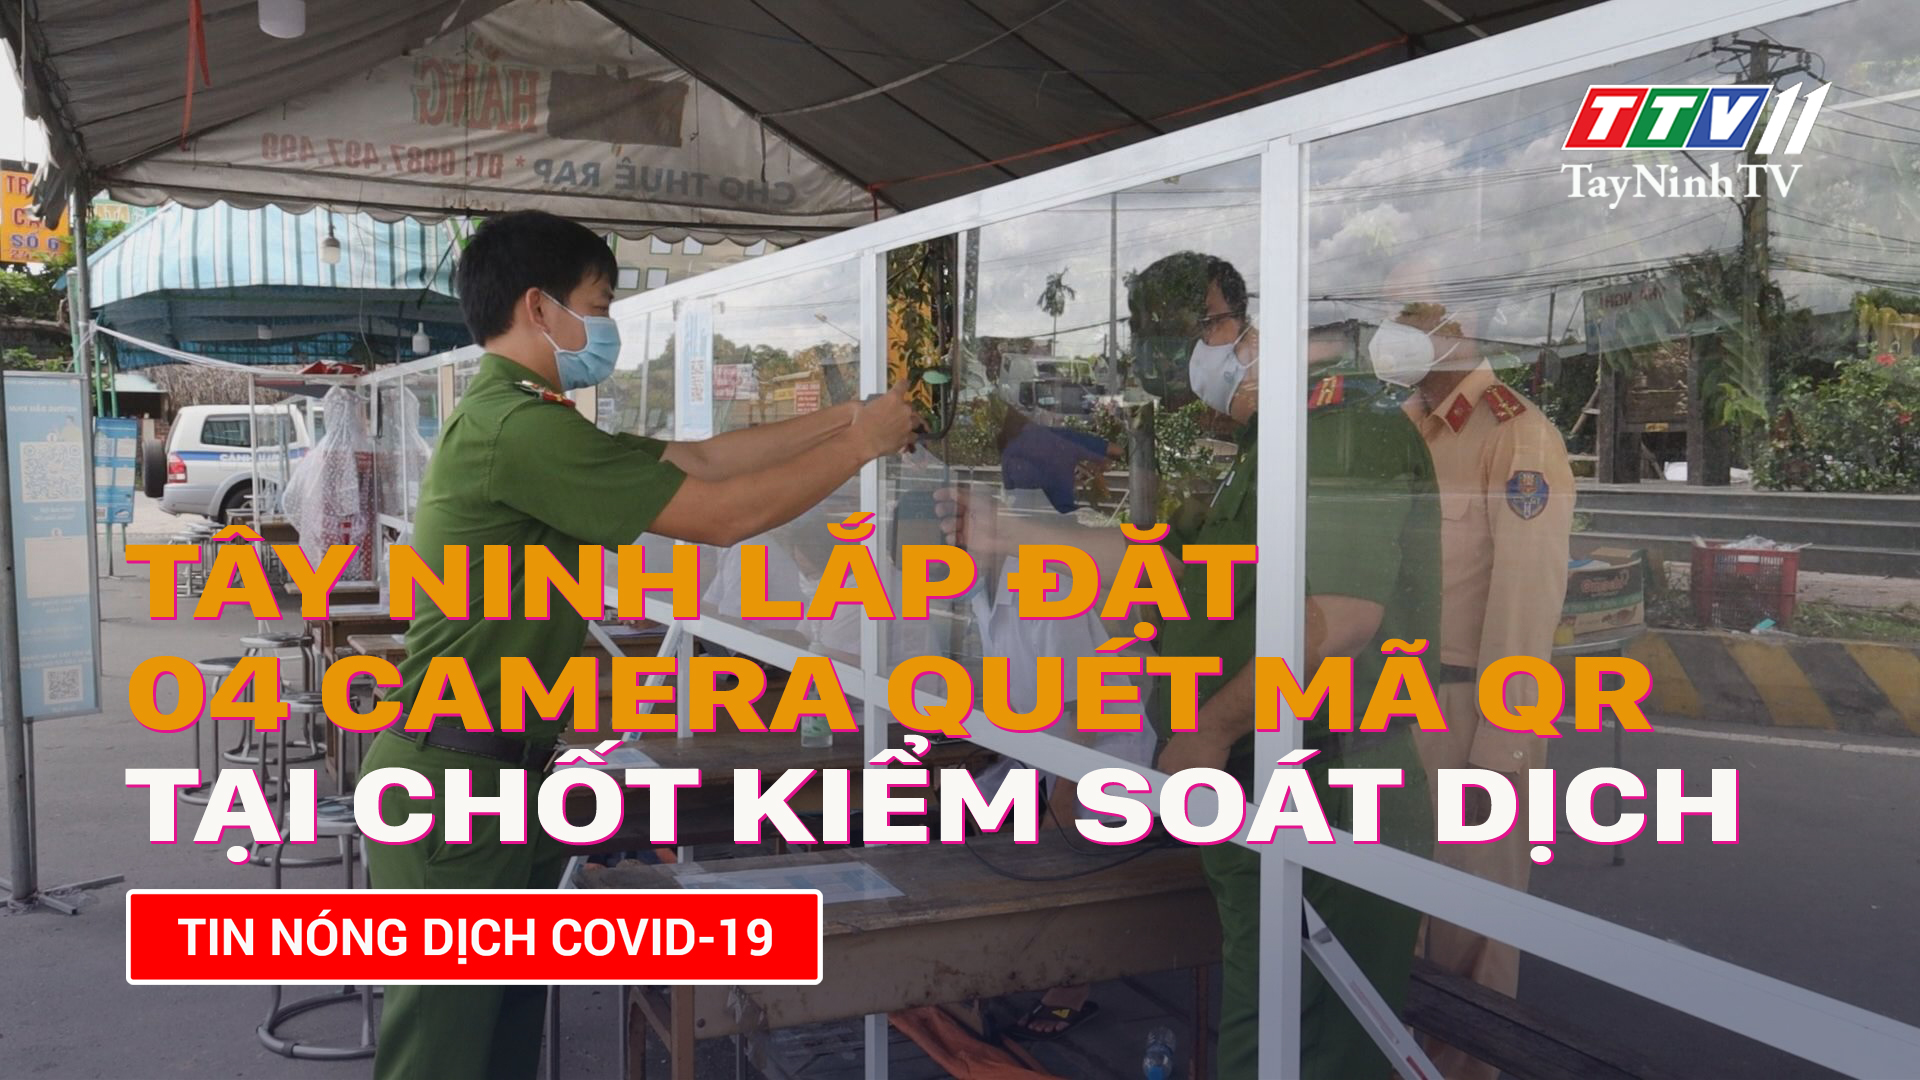 Tây Ninh lắp đặt 04 camera quét mã QR tại các chốt kiểm soát trọng điểm | TayNinhTV